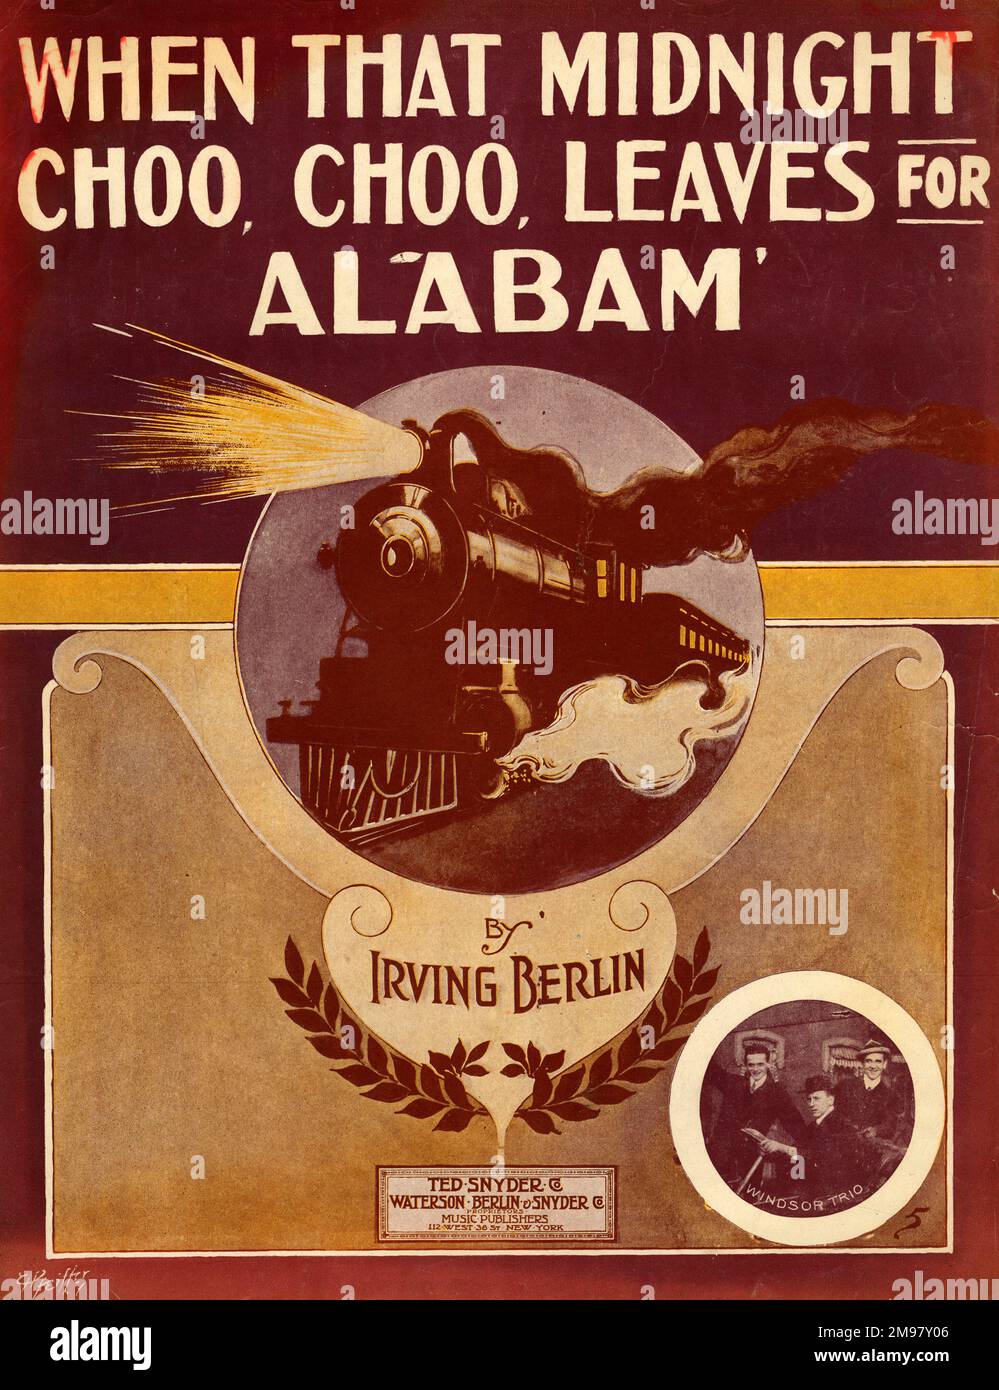 Couverture musicale, quand ce Choo Choo de minuit part pour Alabam', par Irving Berlin. Banque D'Images